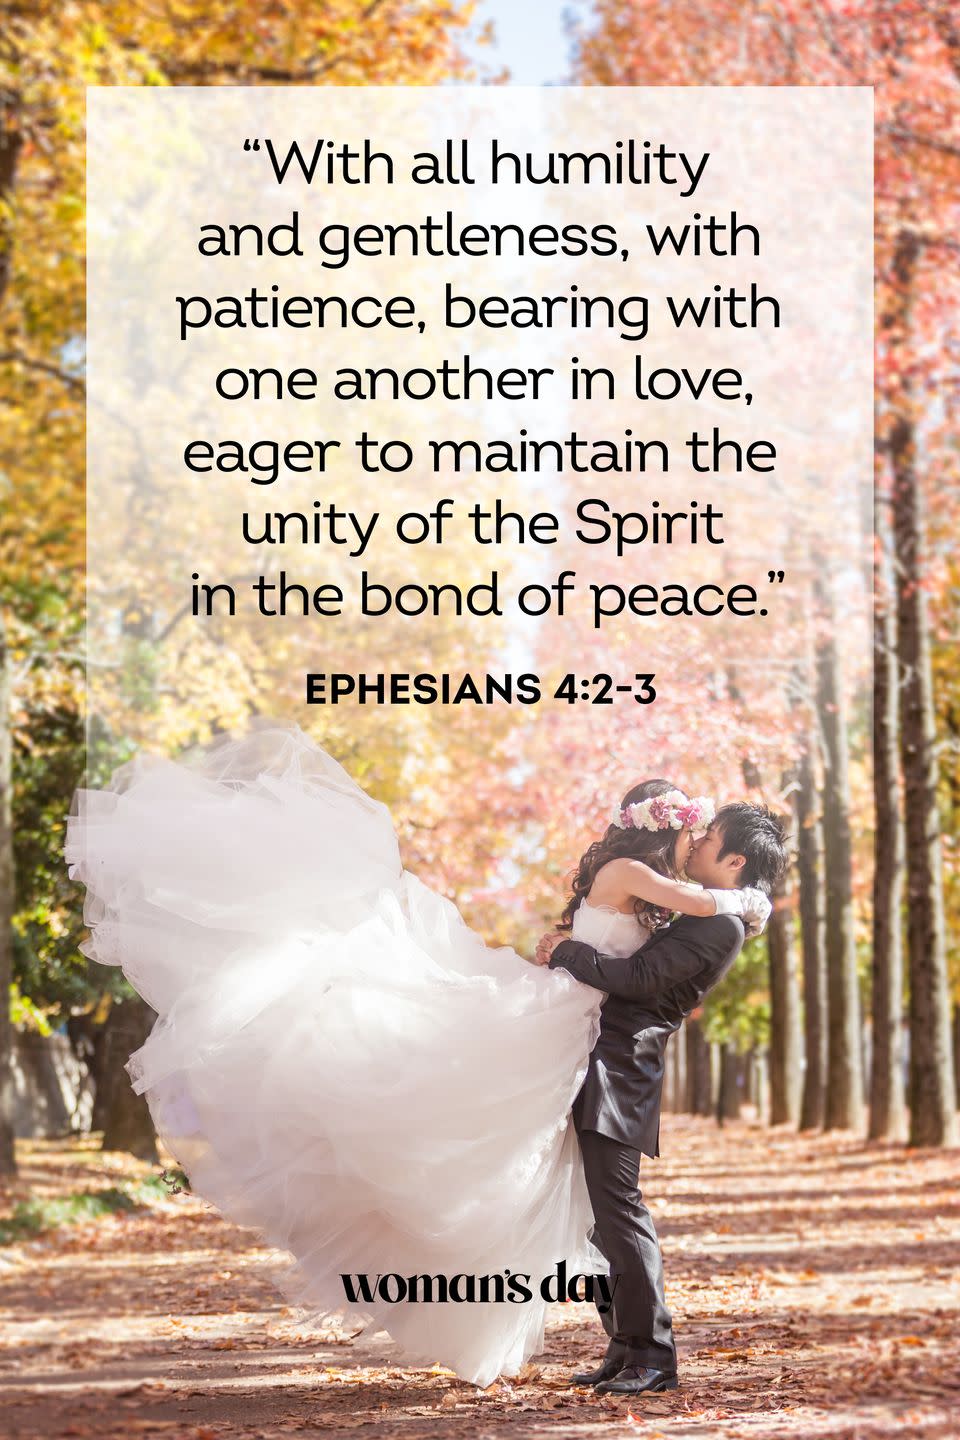 11) Ephesians 4:2-3